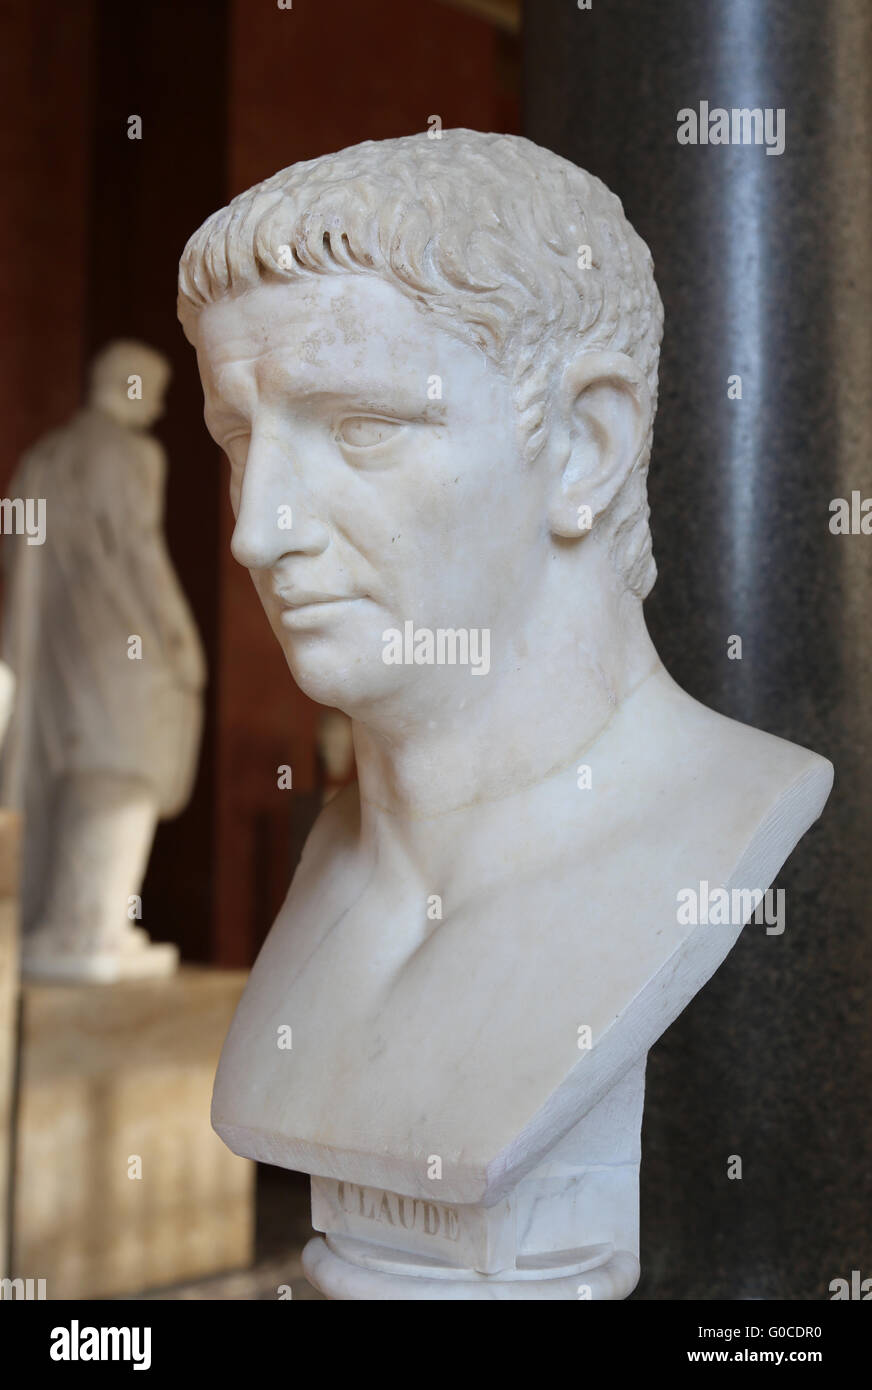 Claudius (10 v. Chr. - 54 n. Chr.). Römischer Kaiser von 41 bis 54. Julio-Claudian Dynastie. Porträt. Marmor. 1. Jahrhundert n. Chr. Louvre, Paris Stockfoto